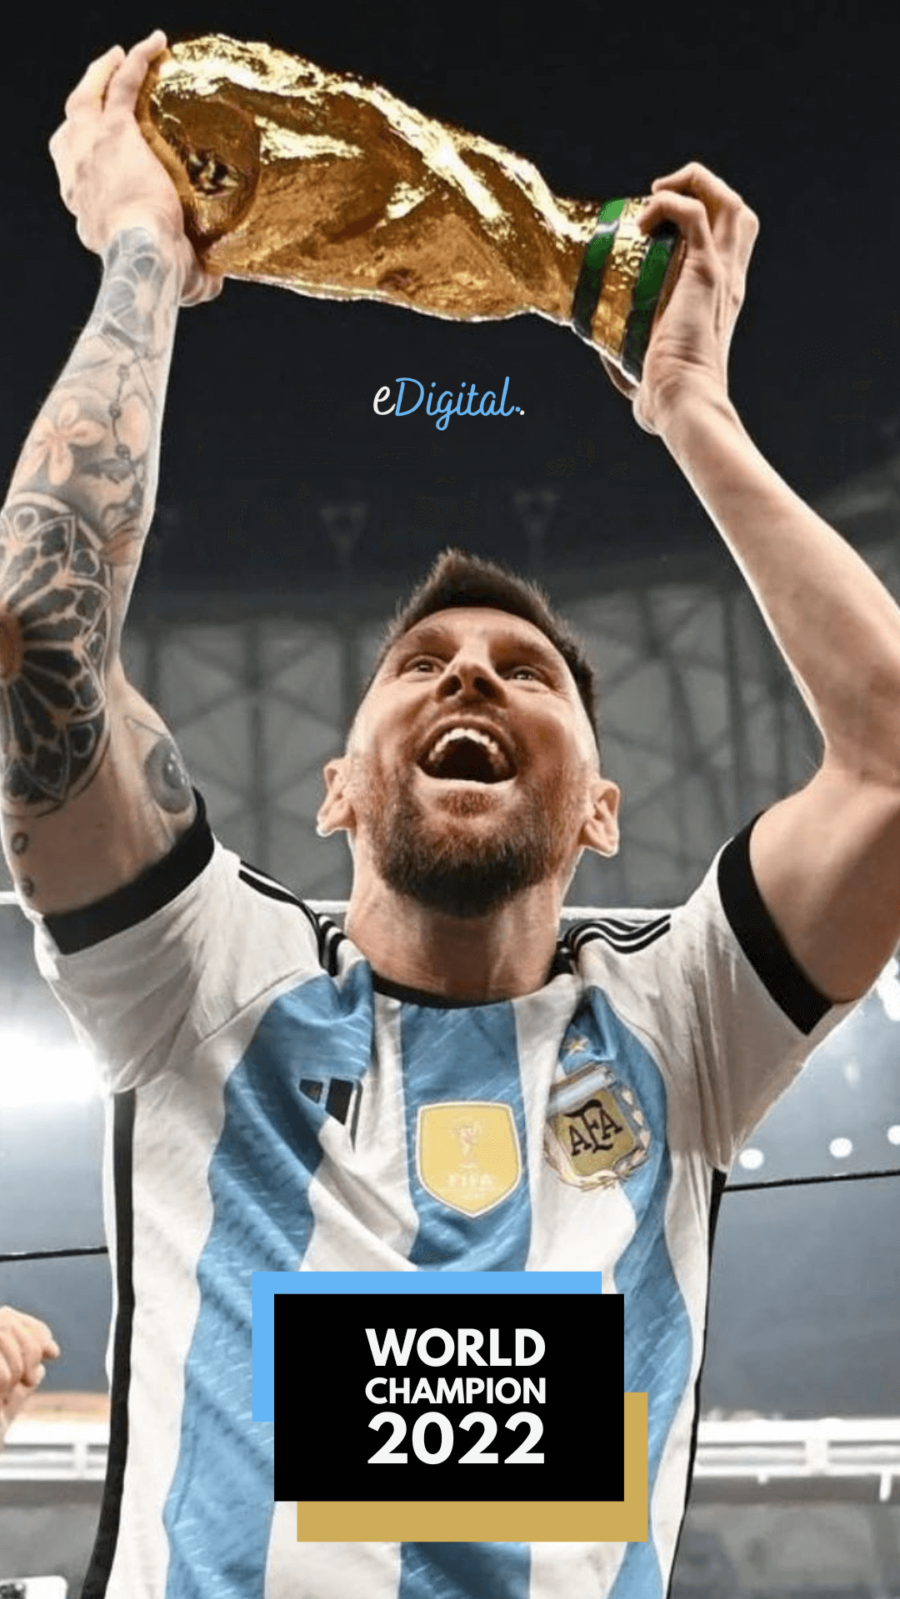 Hình nền 2022 World Cup Messi sẽ đưa bạn đến với những giây phút đầy cảm xúc và mãn nhãn với ngôi sao bóng đá hàng đầu thế giới. Hãy cùng chuẩn bị cho sự kiện thể thao lớn nhất năm tới!